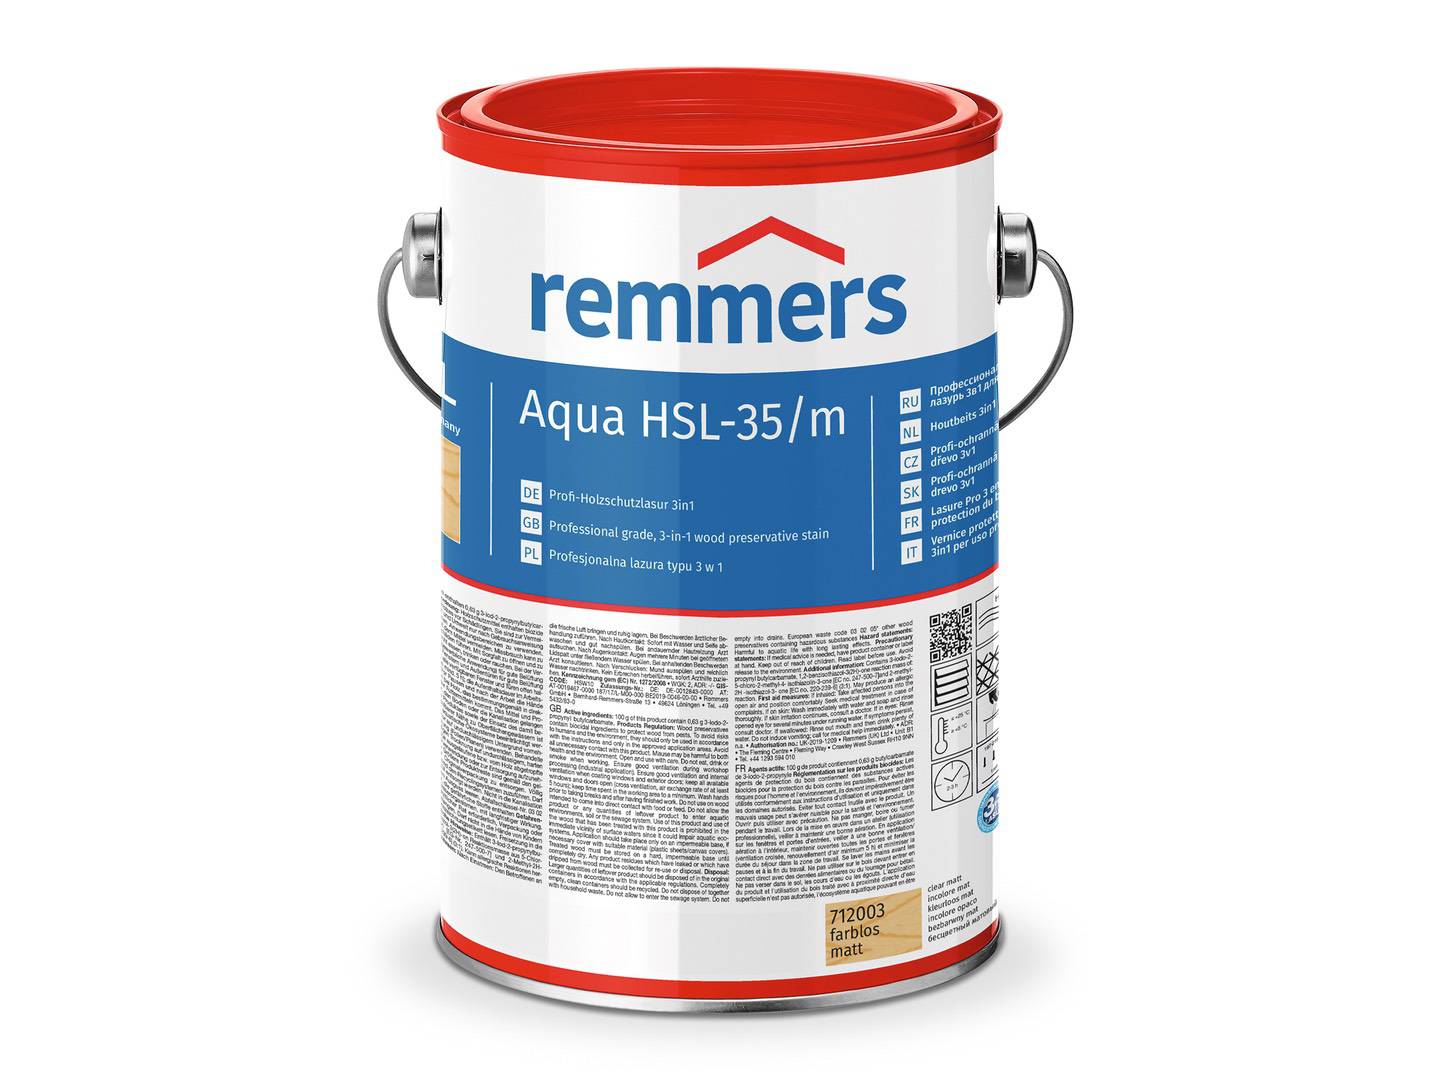 REMMERS Aqua HSL-35/m-Profi-Holzschutz-Lasur 3in1 palisander (RC-720) 20 l